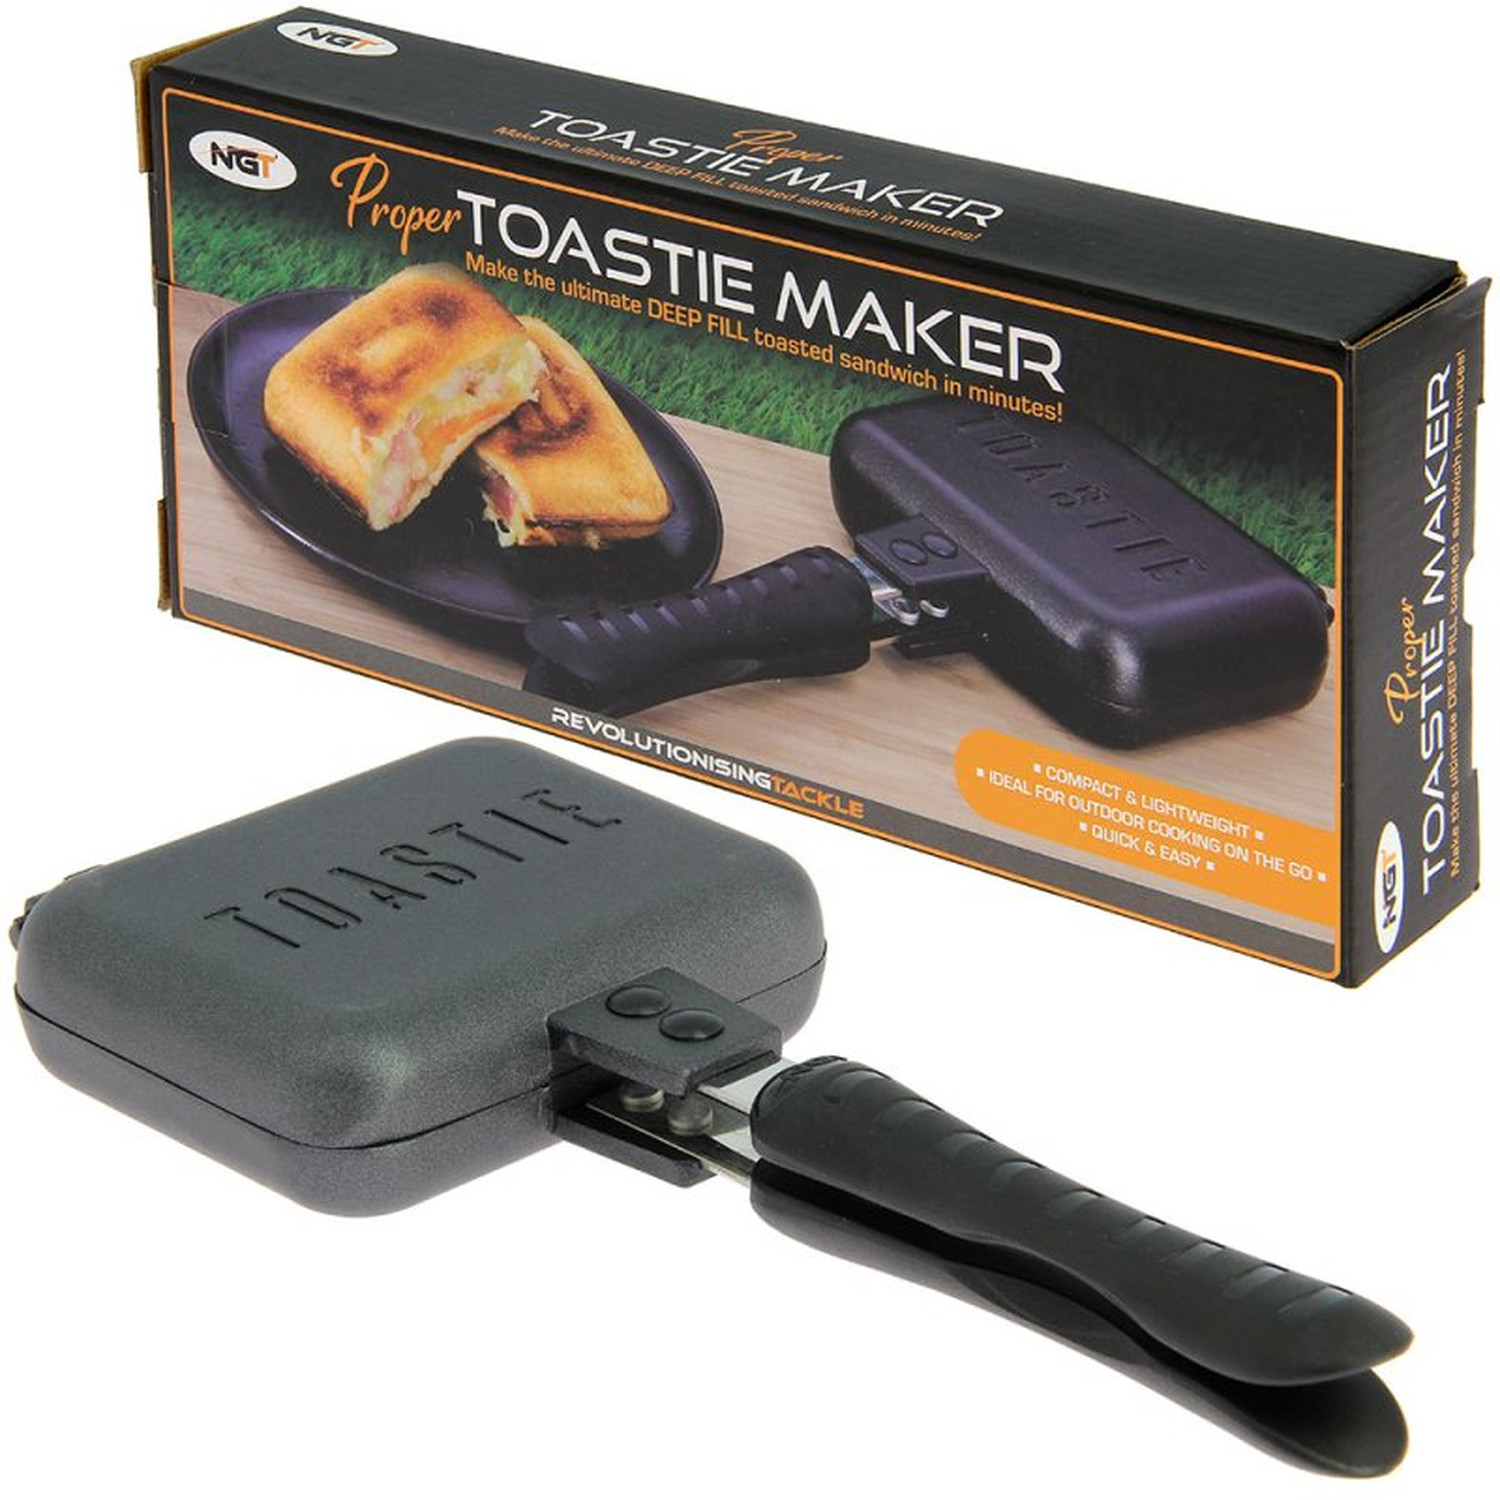 Proper Toastie Maker - Sandwichtoaster für Gaskocher beim Camping, Angeln und unterwegs